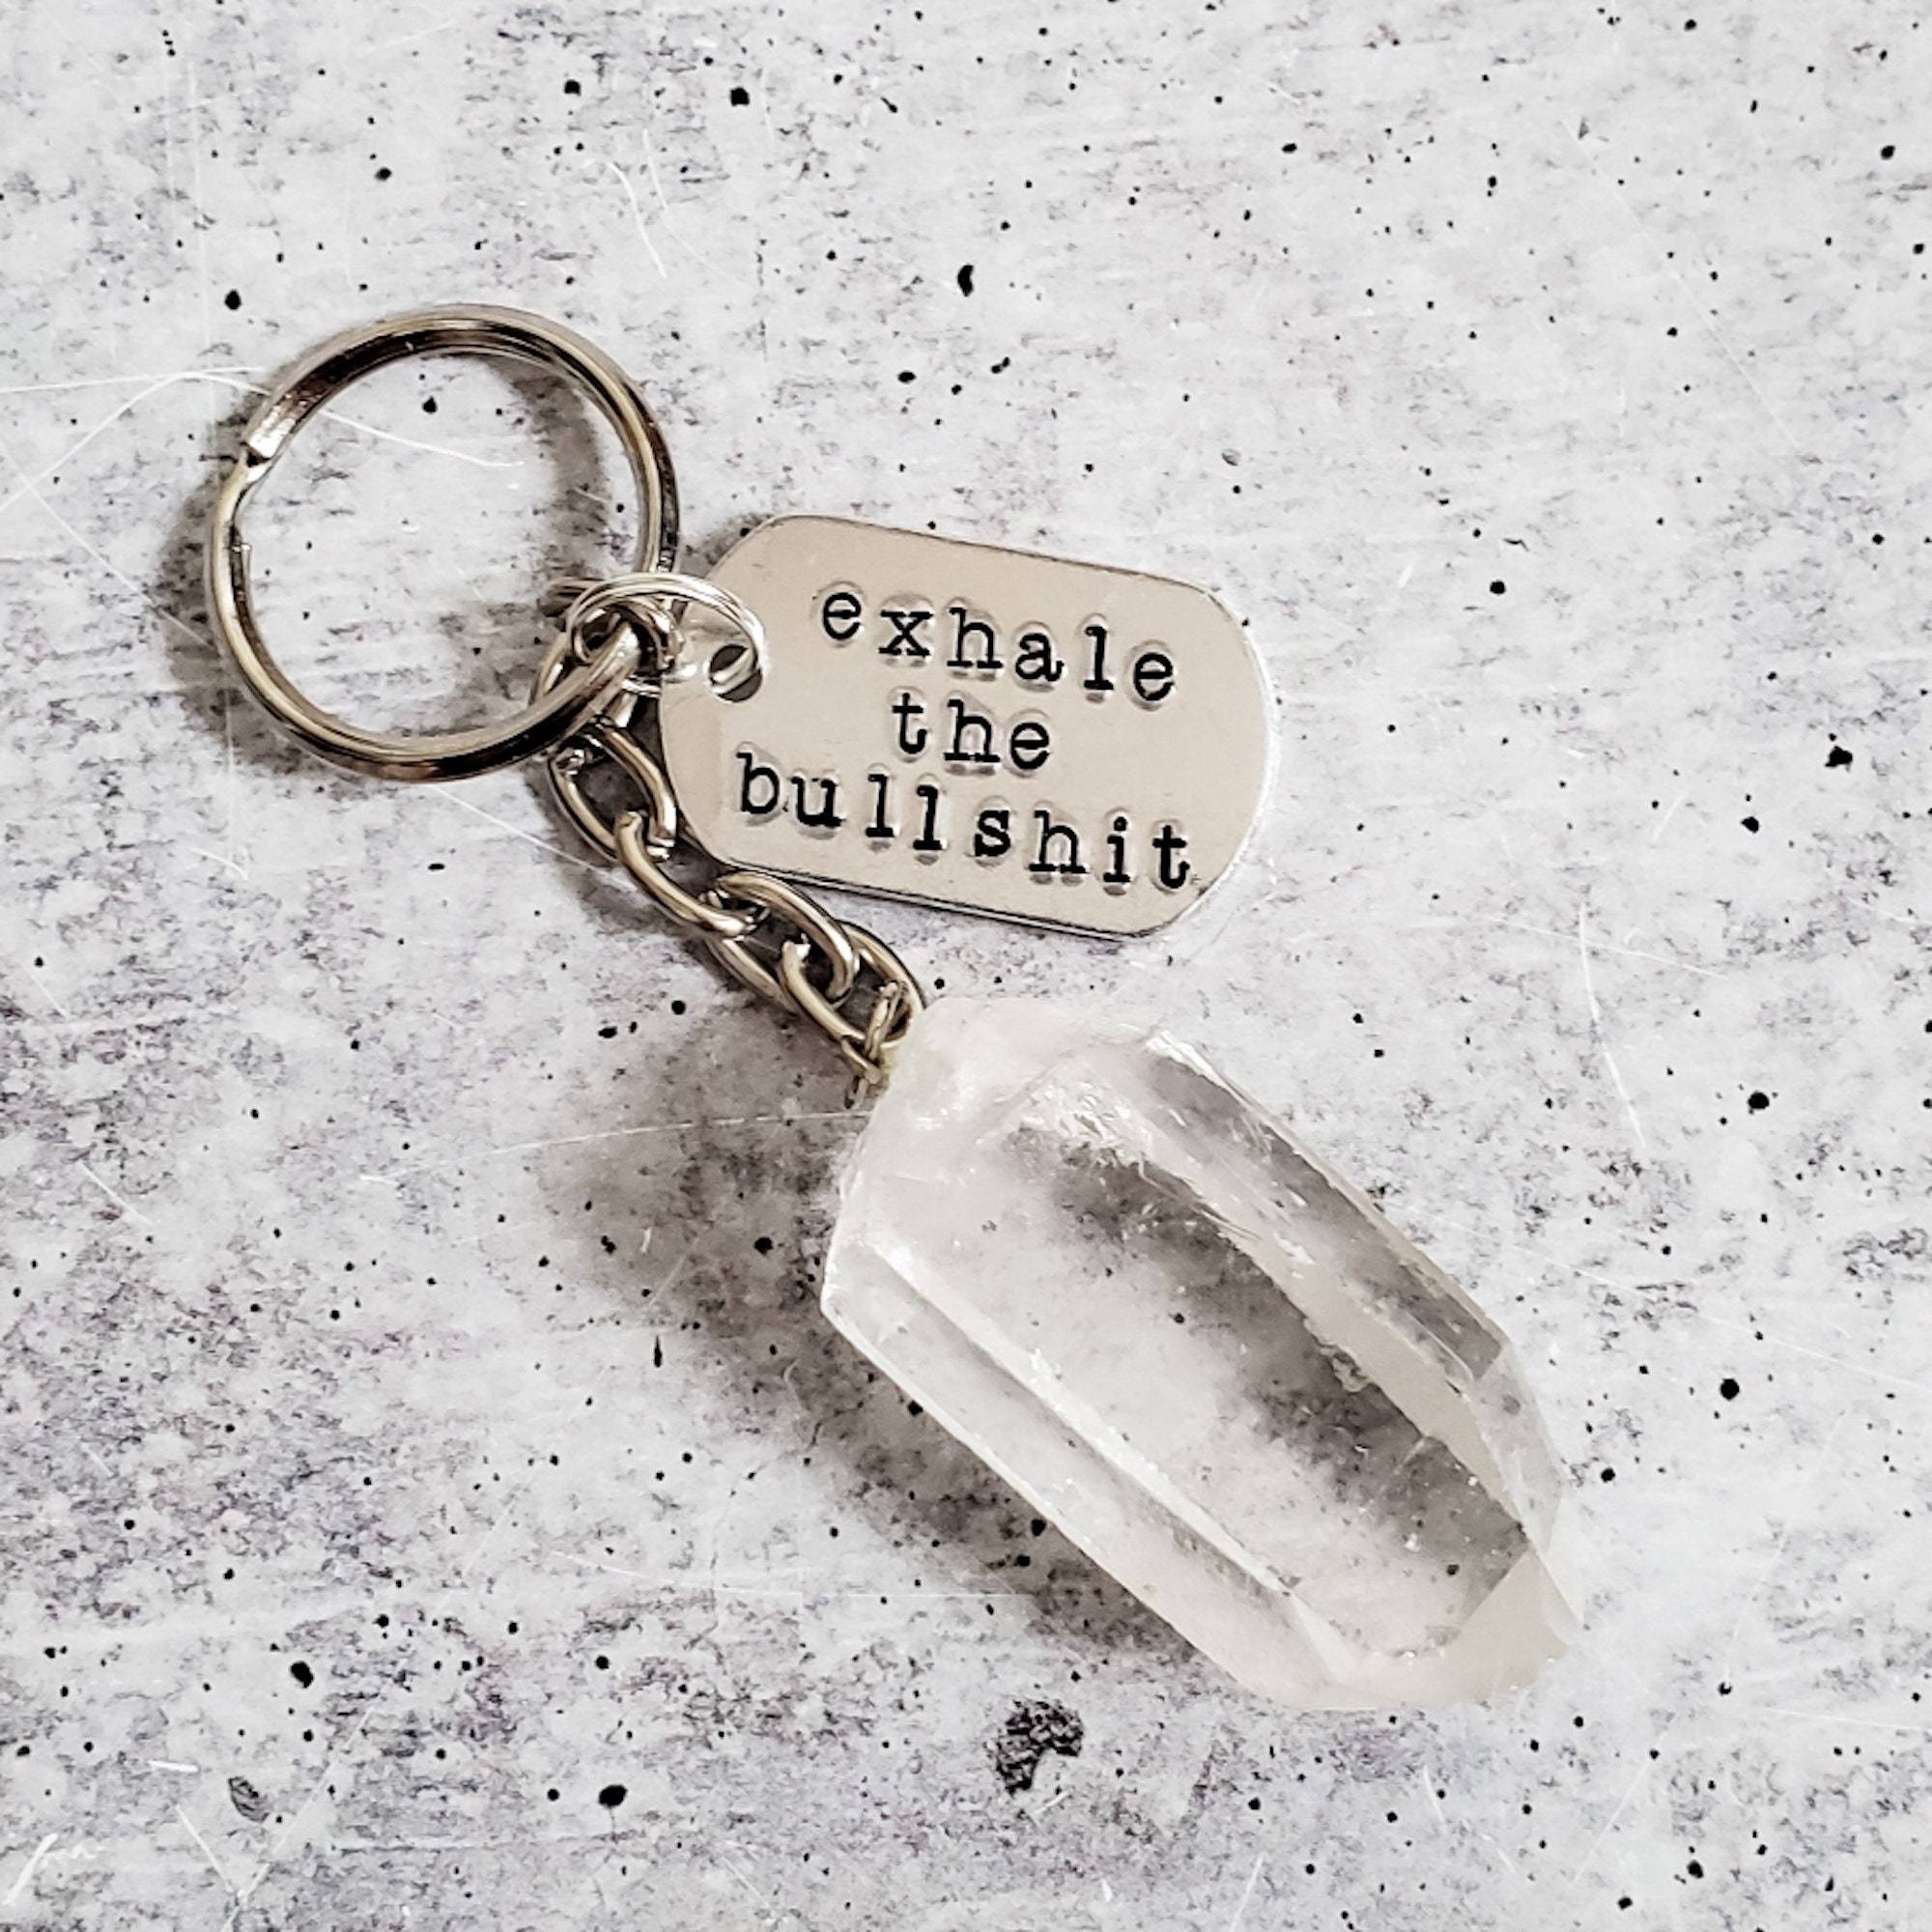 EXHALE THE BULLSHIT Crystal Keychain Salt and Sparkle